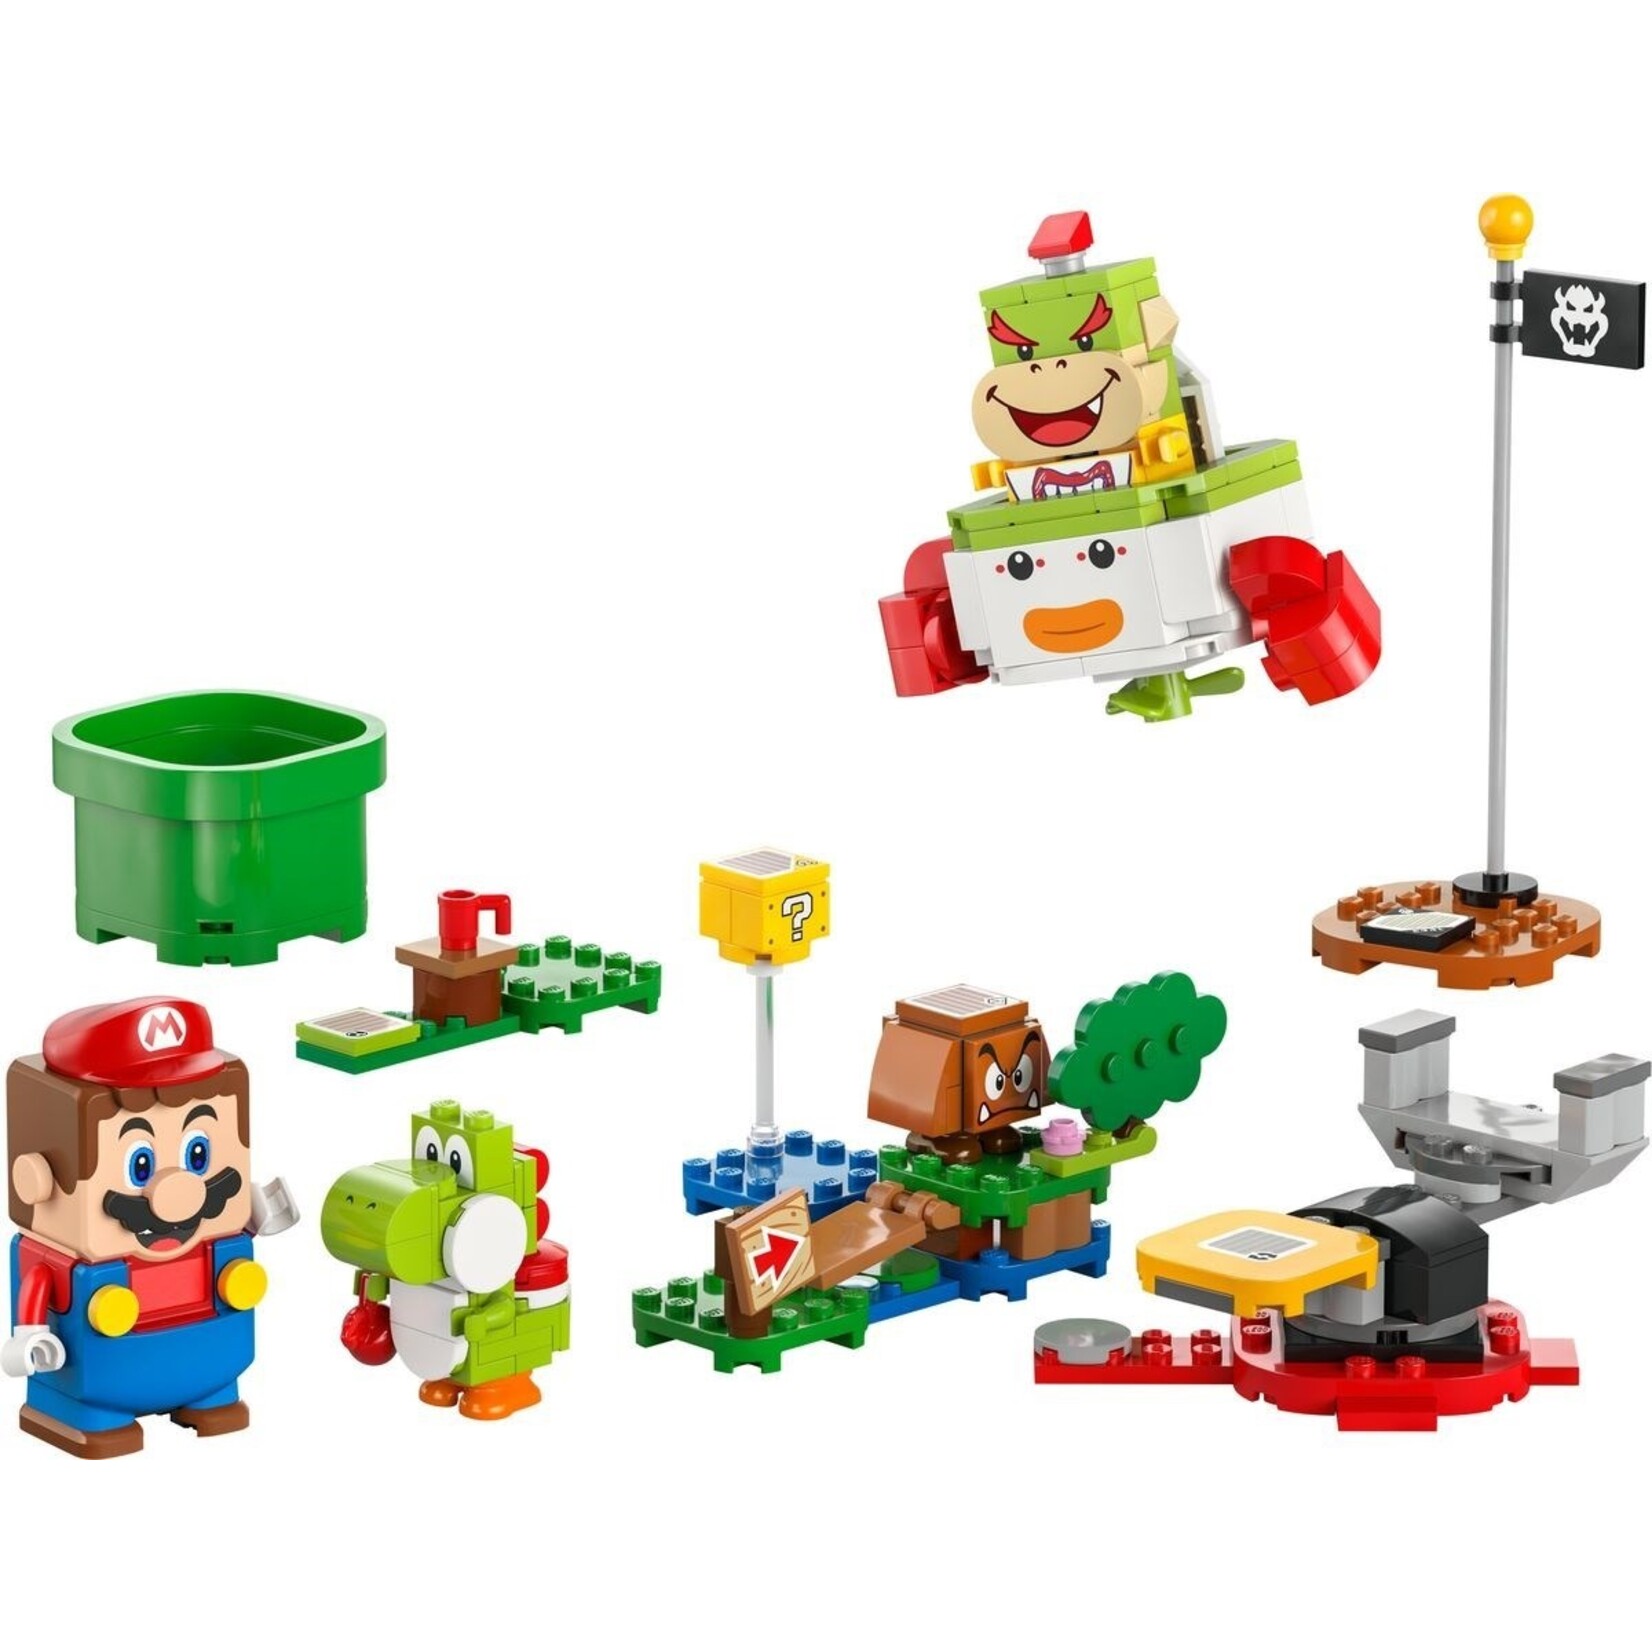 LEGO Avonturen met interactieve LEGO® Mario™ - 71439